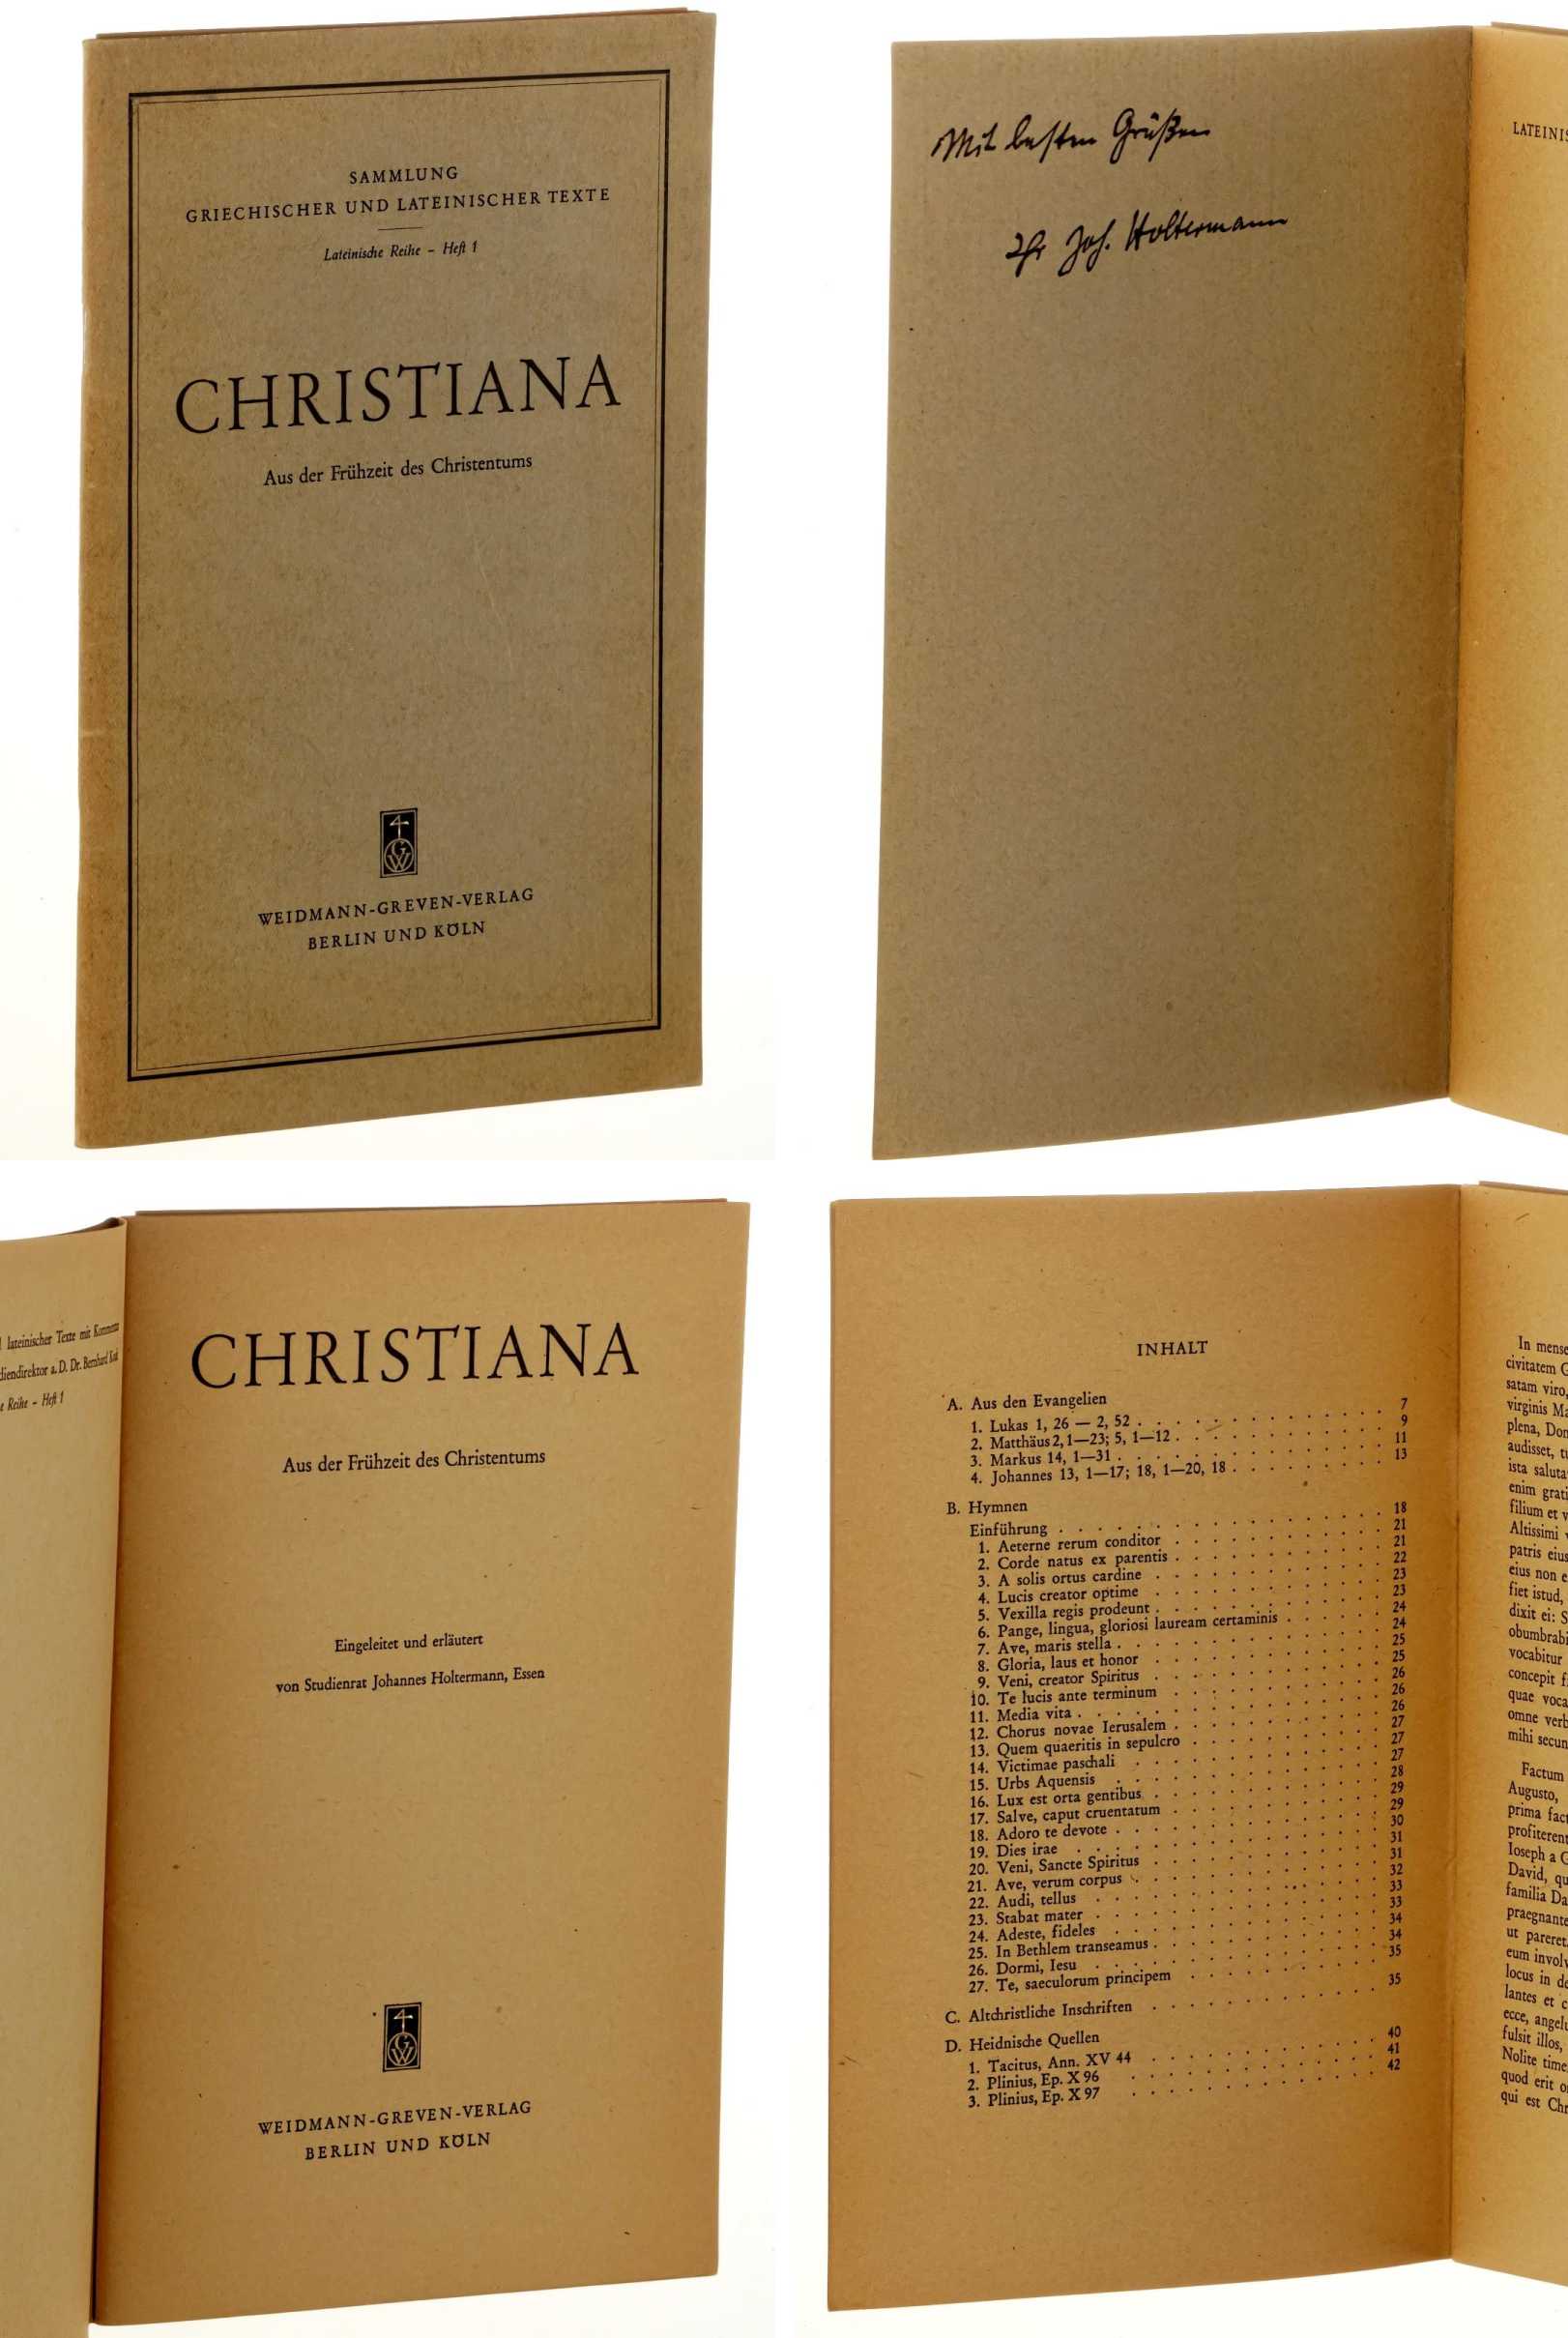   Christiana. Aus der Frühzeit des Christentums. Eingel. u. erl. von Johannes Holtermann. (Texte lateinisch). 